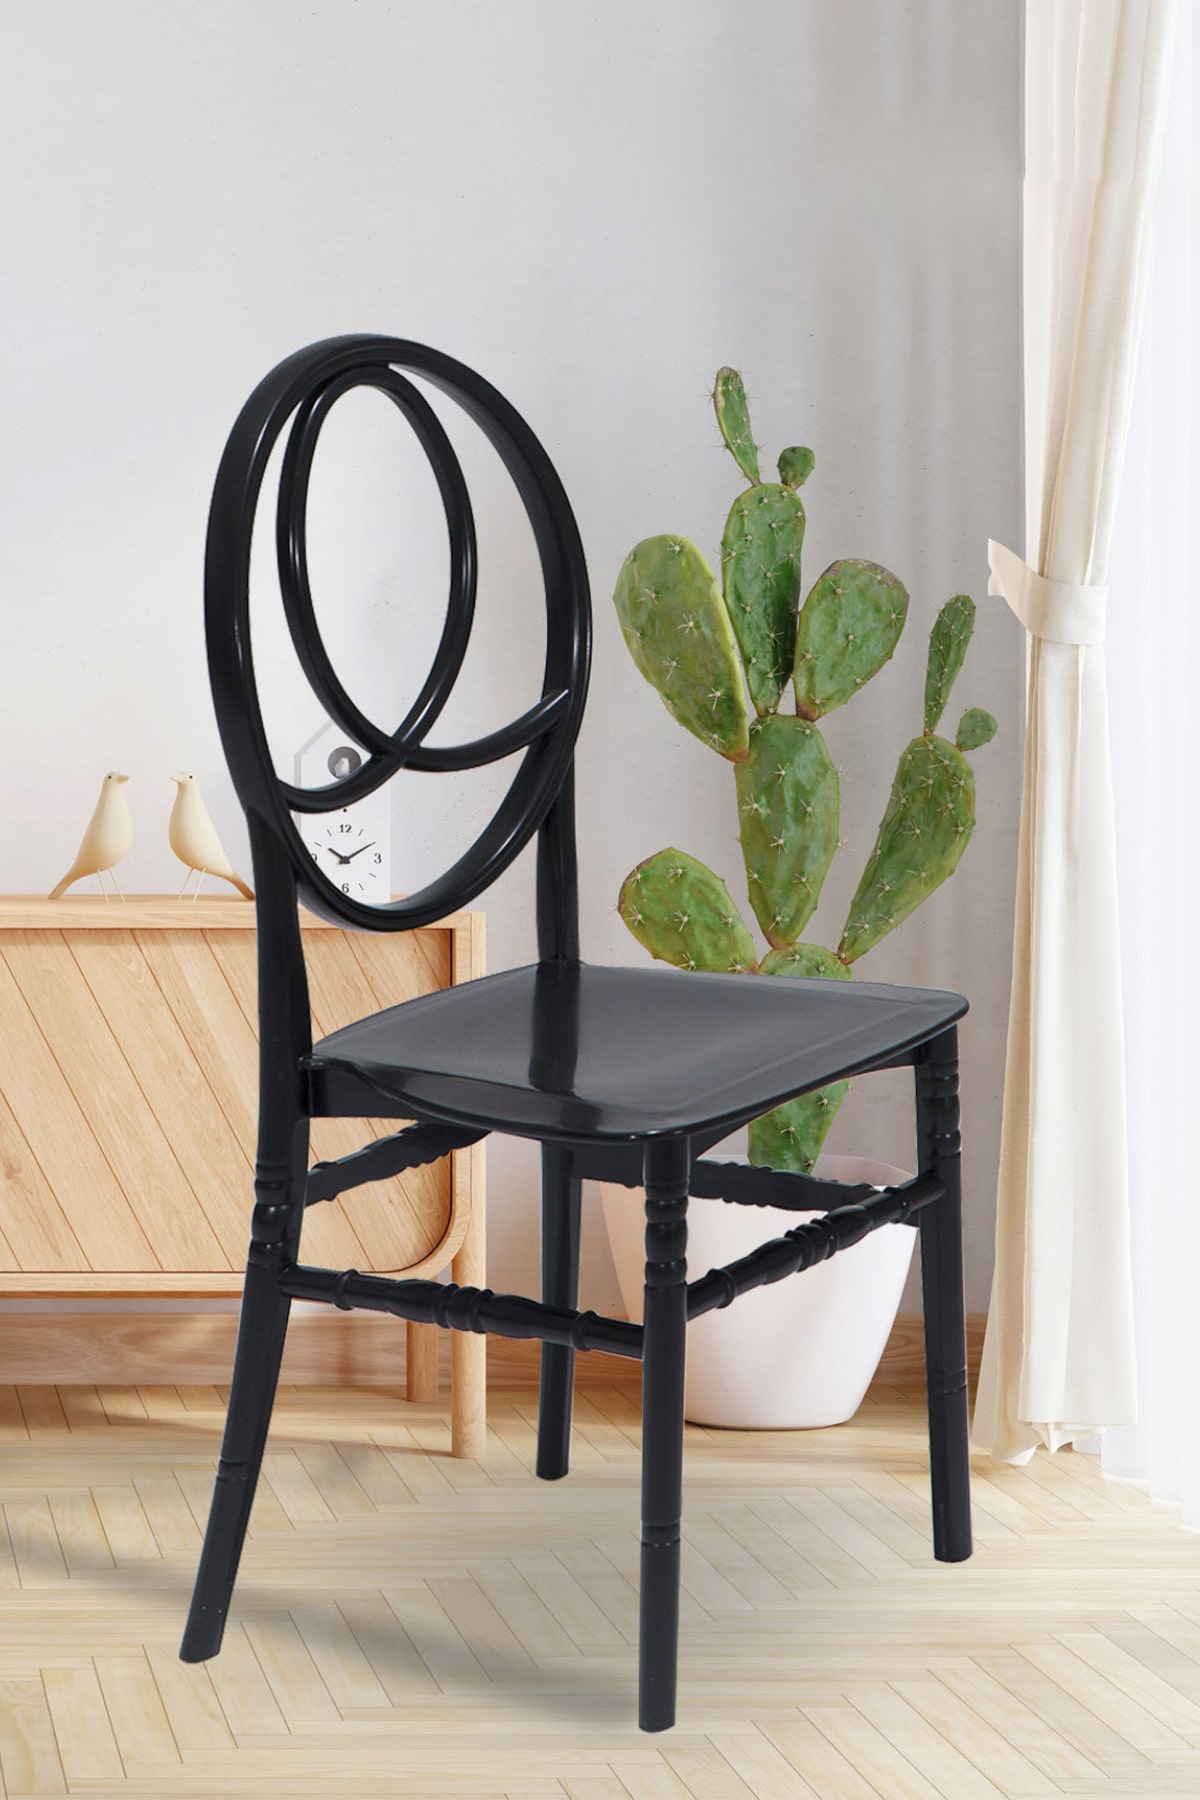 4 Pieces Phoenix Black Chair / Balcony-Garden-Kitchen